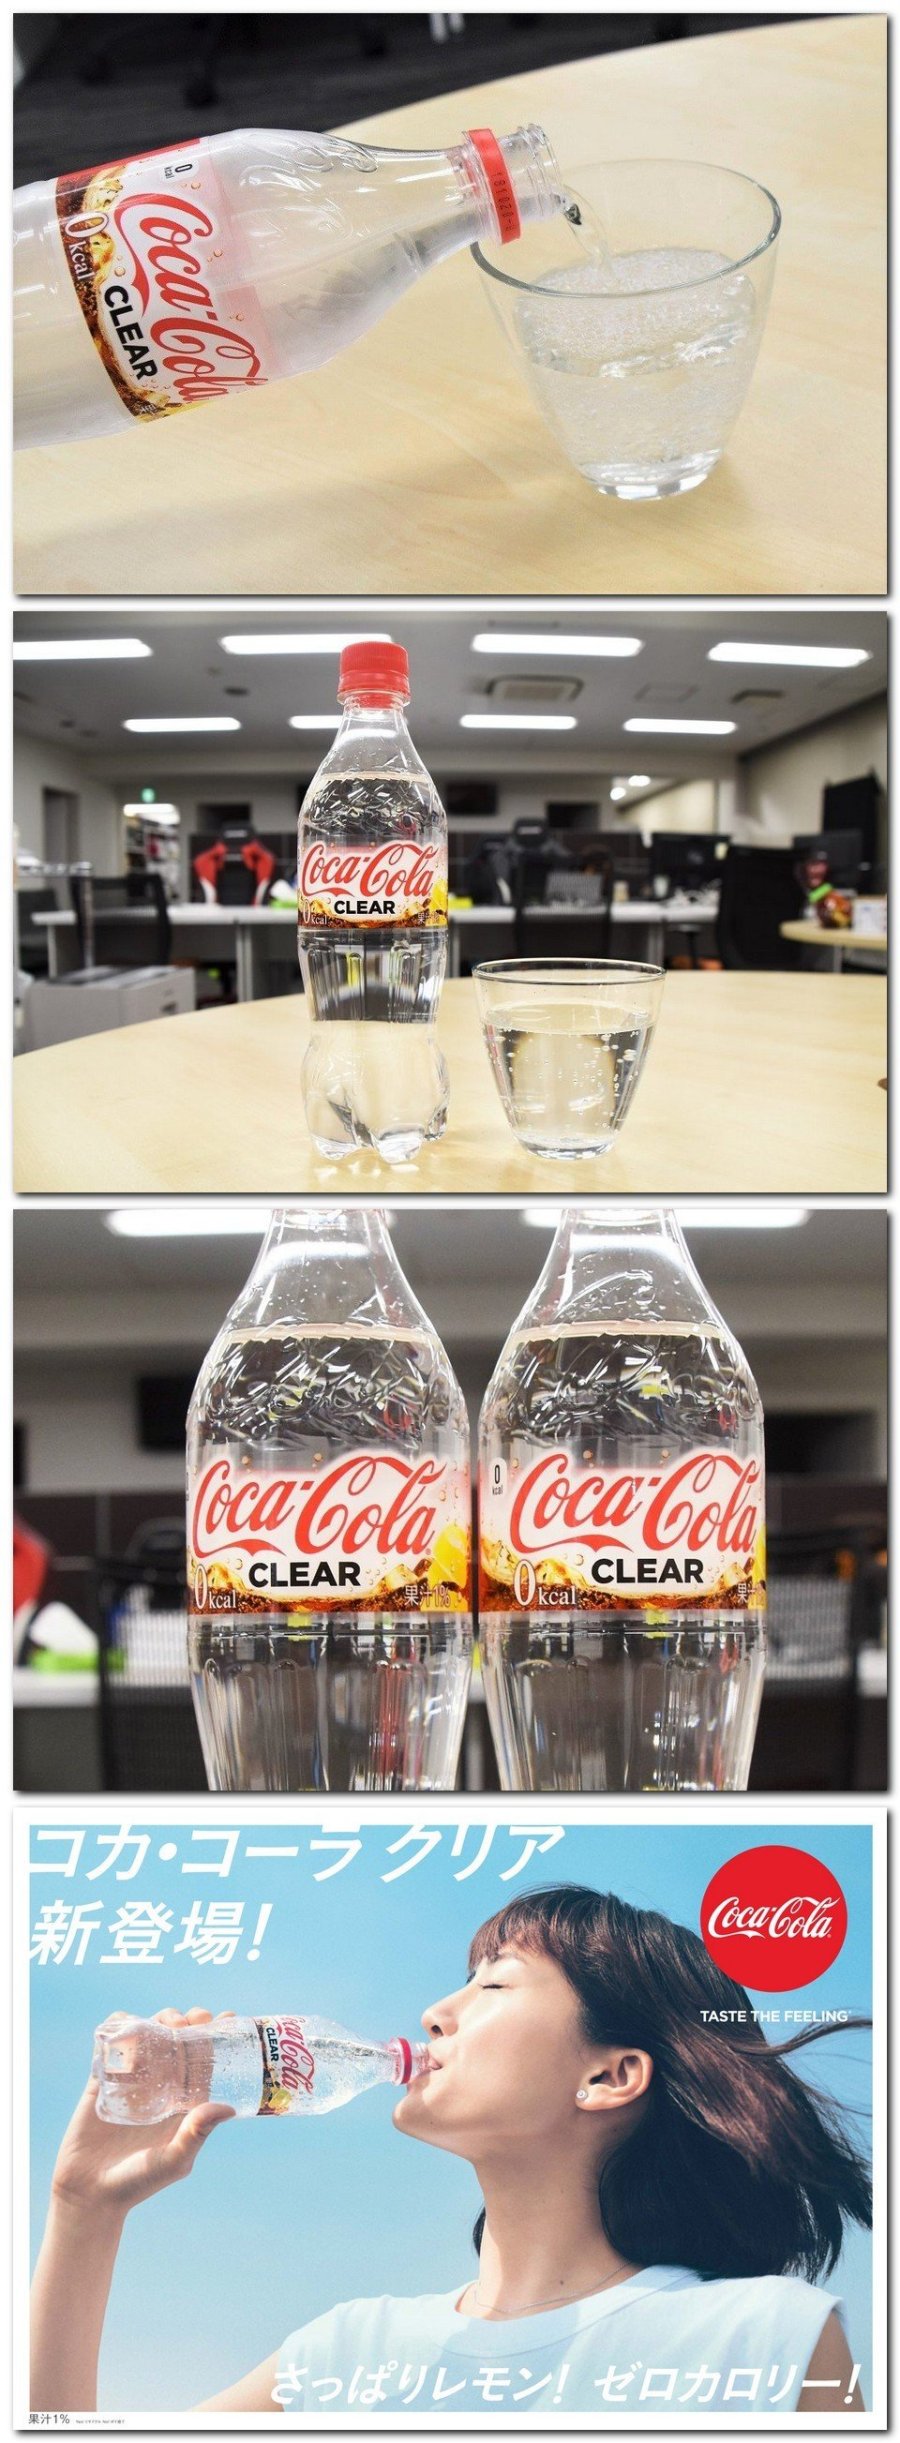 일본에서 출시되는 투명한 코카콜라1.jpg